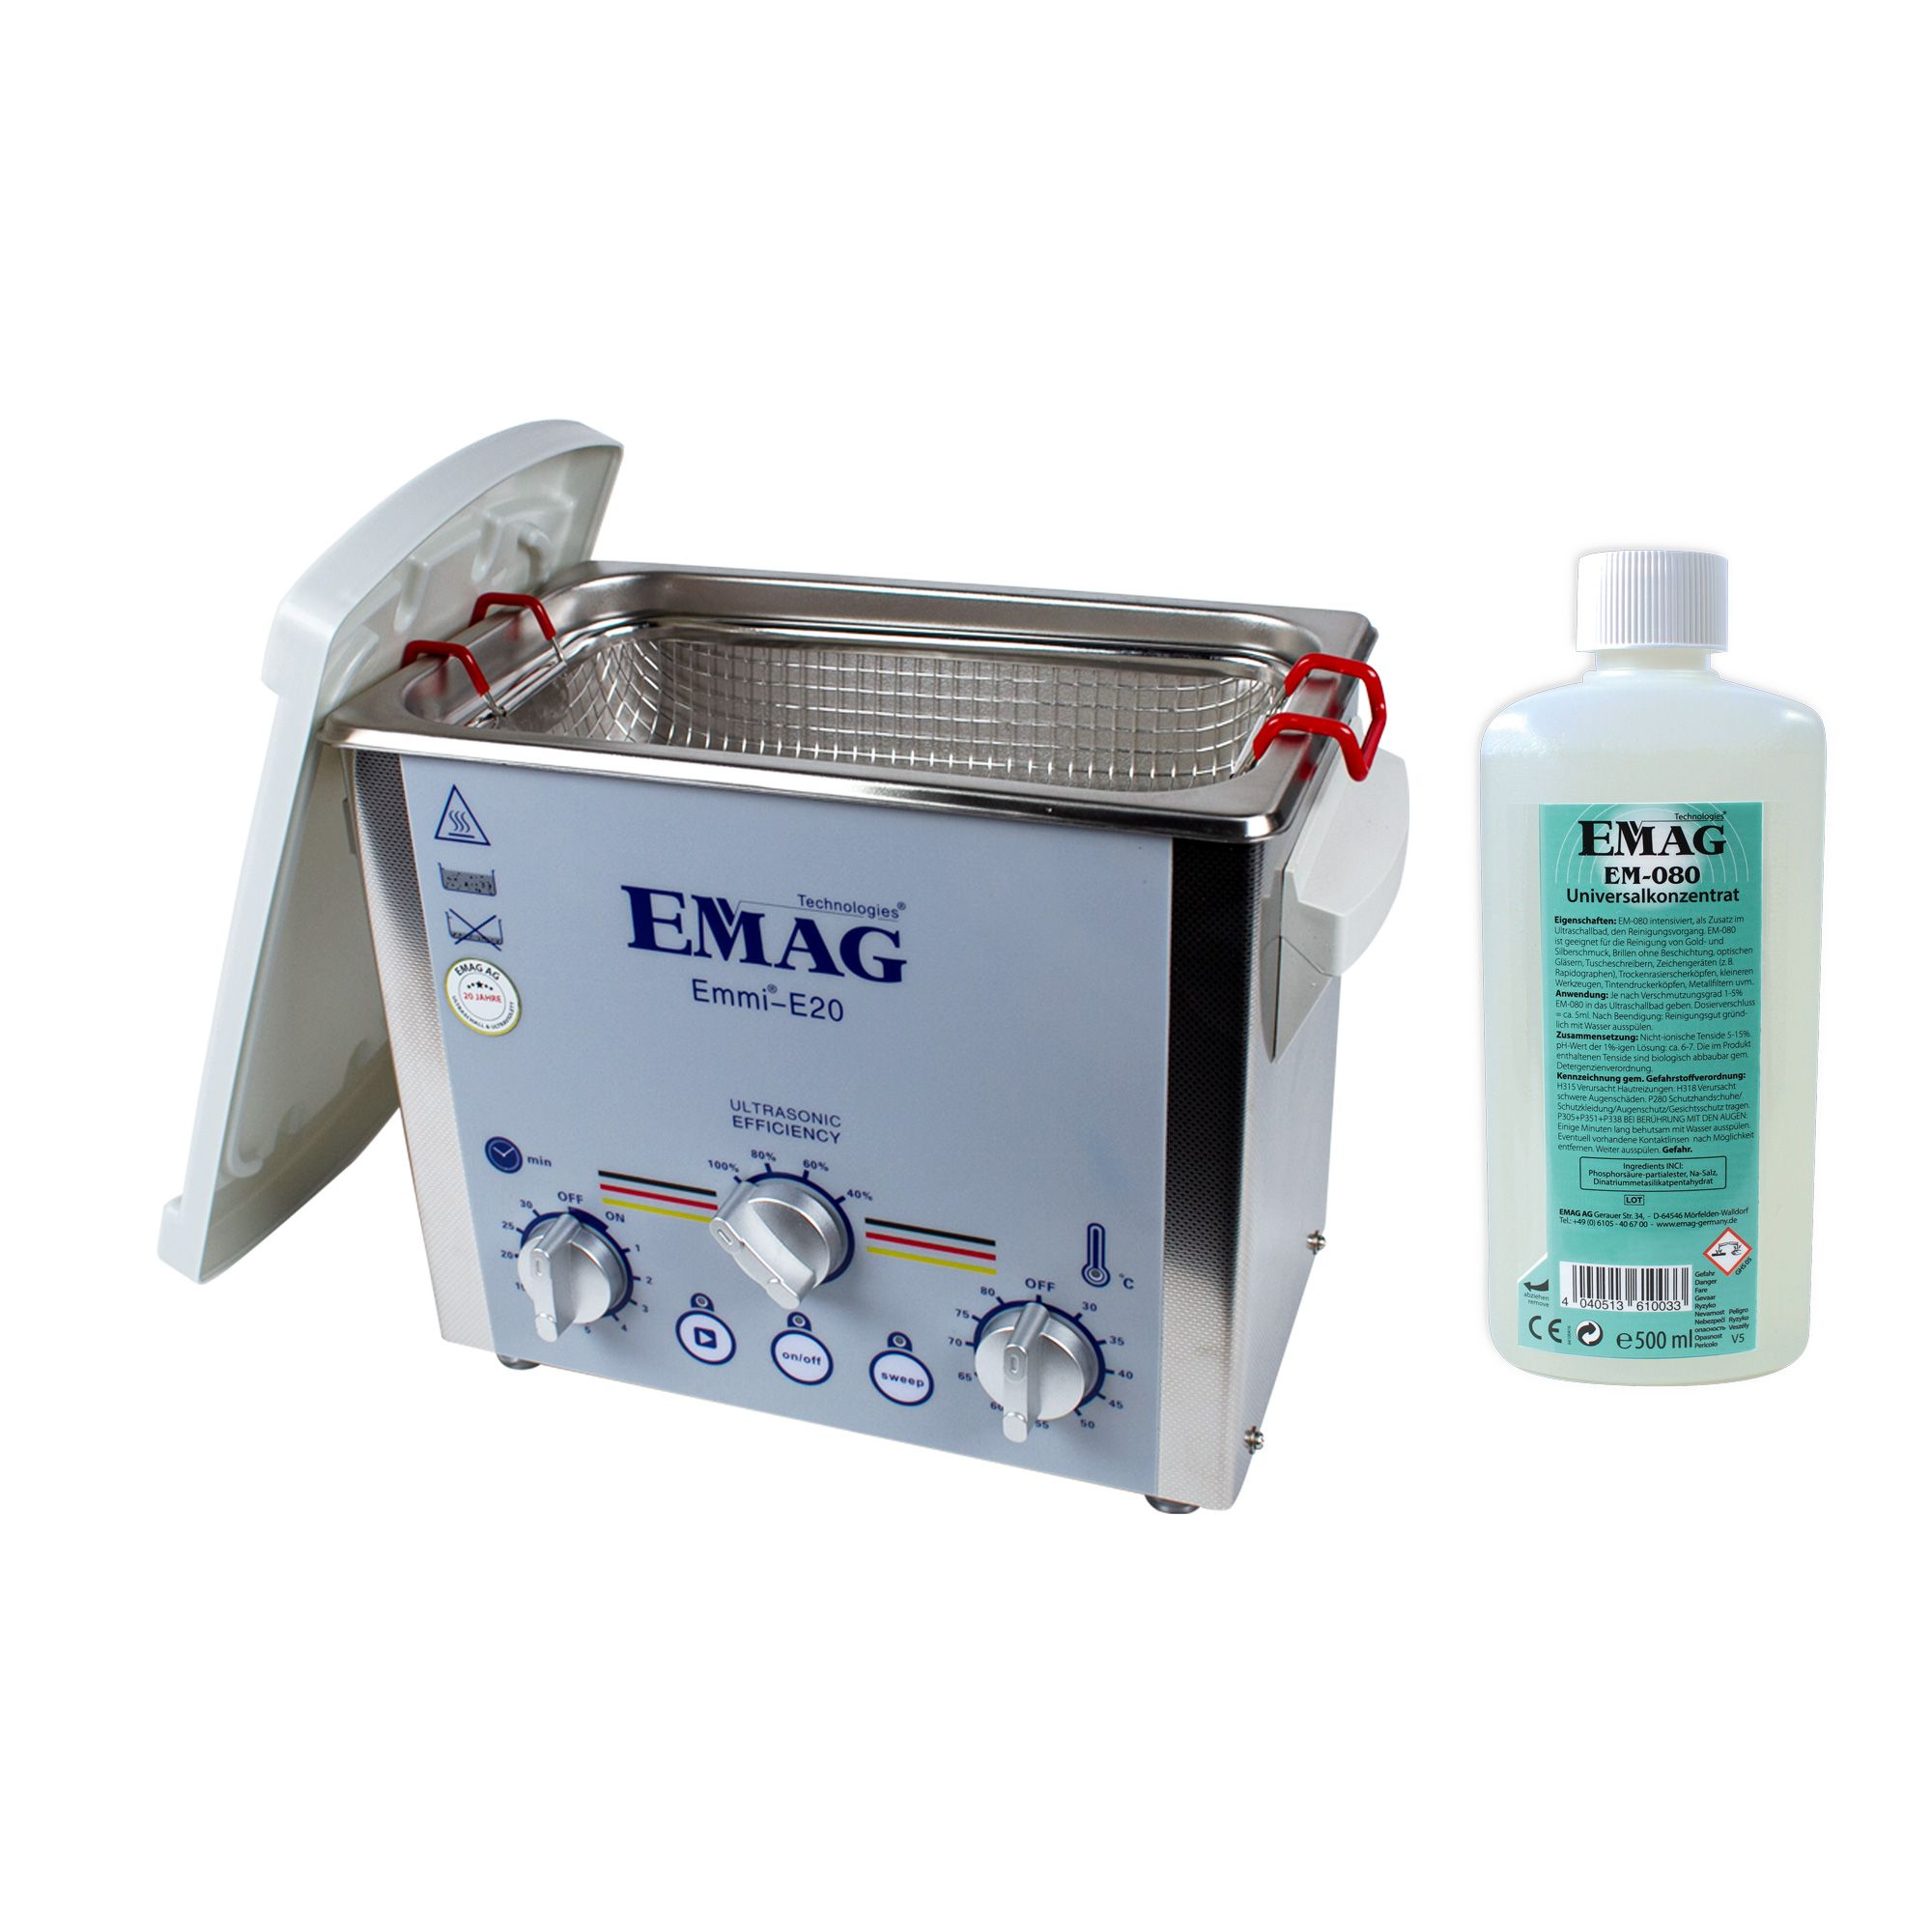 EMAG emmi® E20 Ultraschall Universal-Set Ultraschallreinigungsgerät